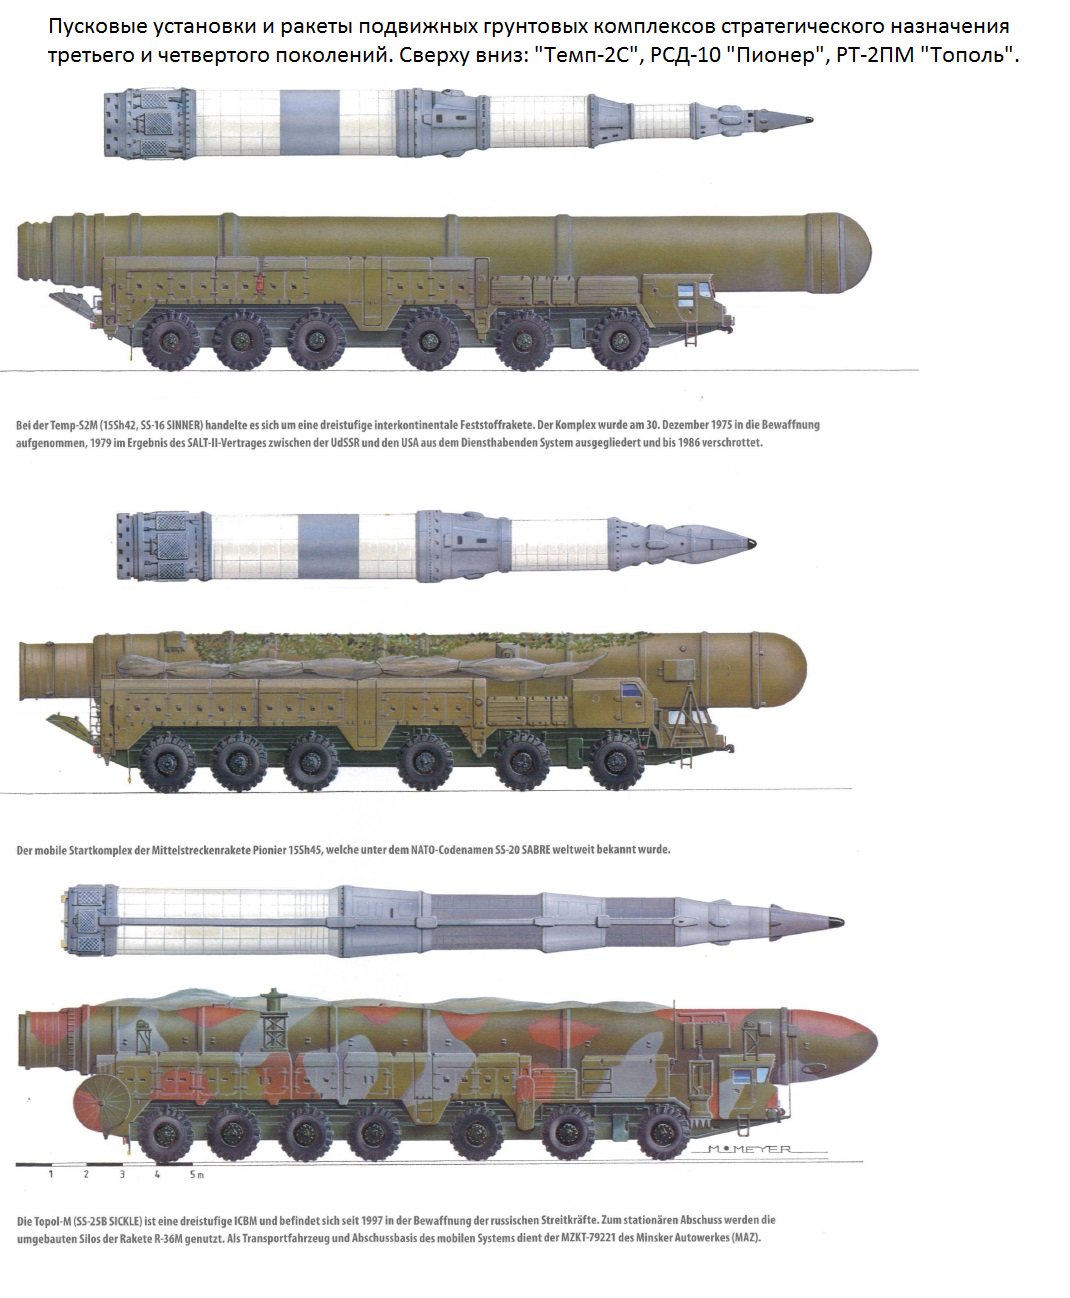 "тополь-м": как россия в 1990-е создавала сверхсовременную ракету • николай стариков